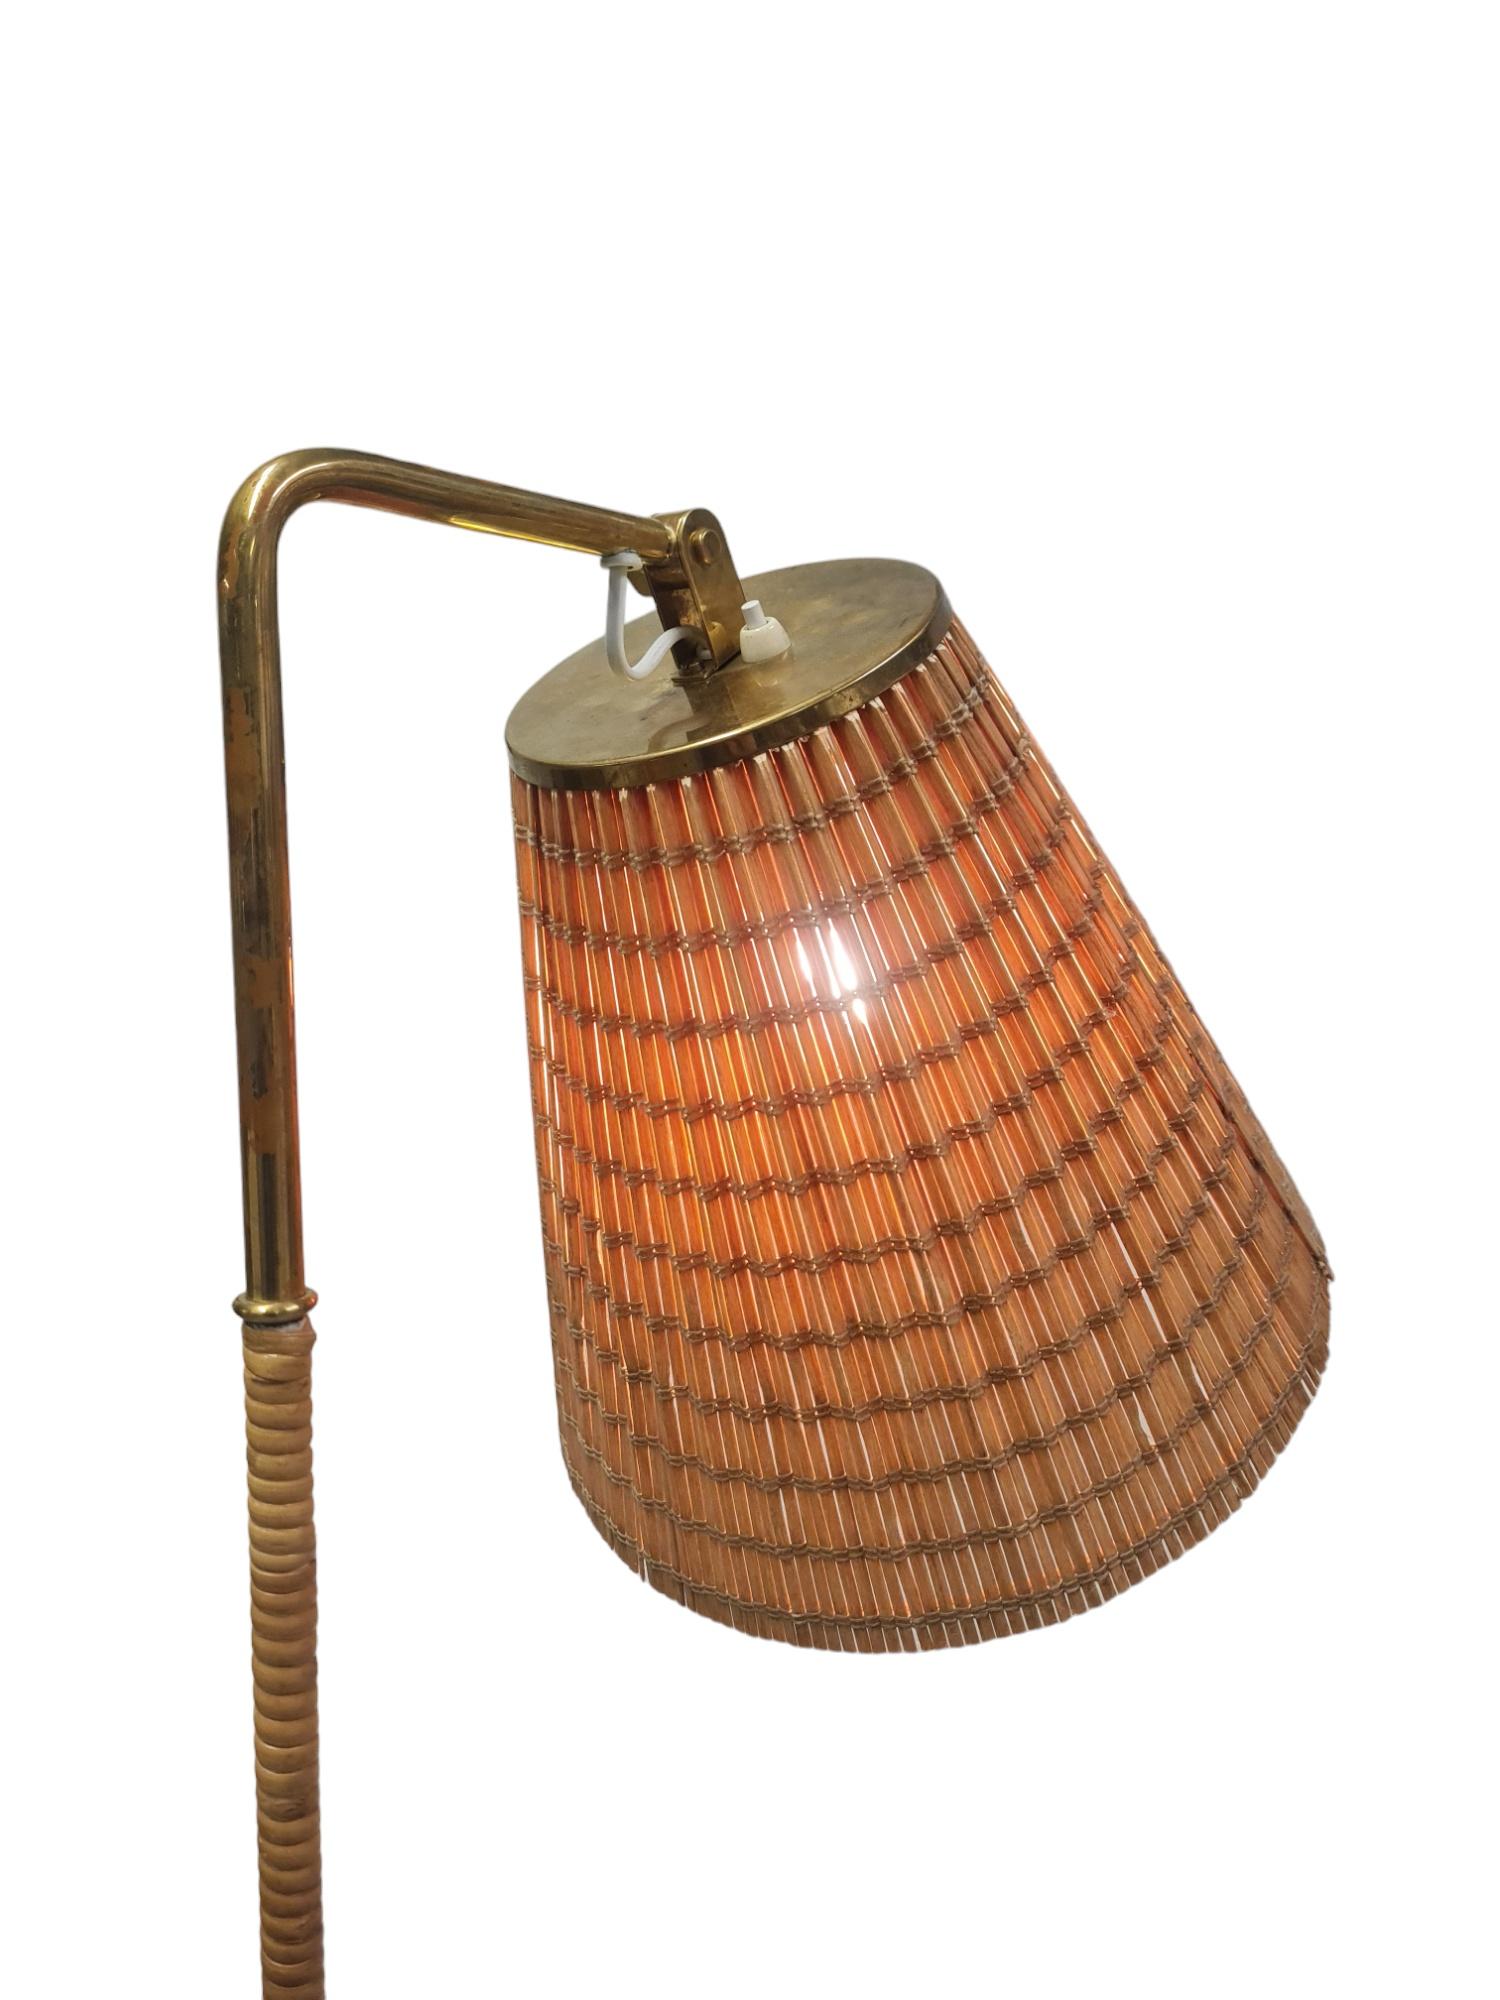 Eine sehr seltene, aber eine der besten und ikonischsten Stehlampen von Paavo Tynell. Diese Lampe des Modells 9631 befindet sich in einem hervorragenden Originalzustand aus den 1950er Jahren, abgesehen von den Drähten und dem Schirm, die